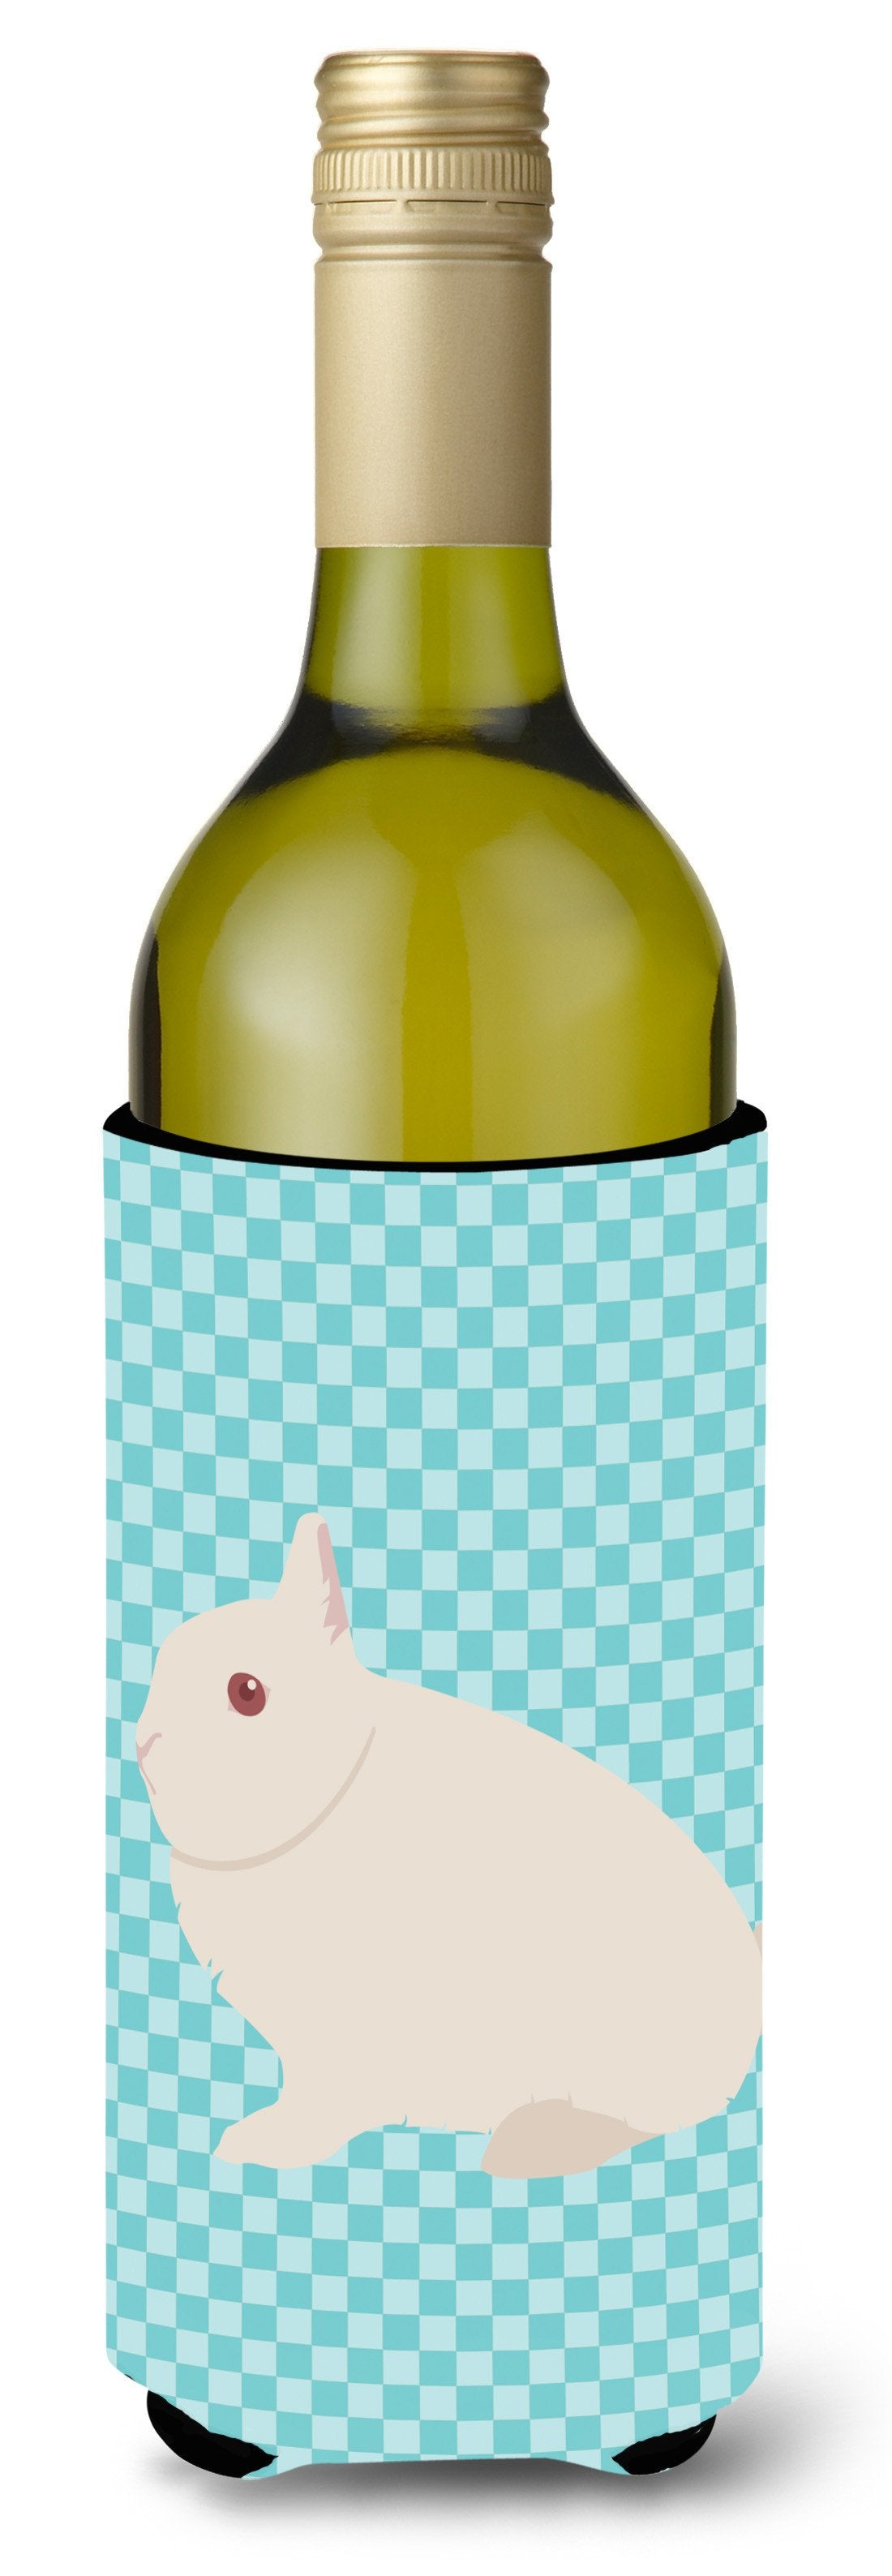 Hermelin Rabbit Blue Check Wine Bottle Beverge Insulator Hugger BB8138LITERK by Caroline&#39;s Treasures